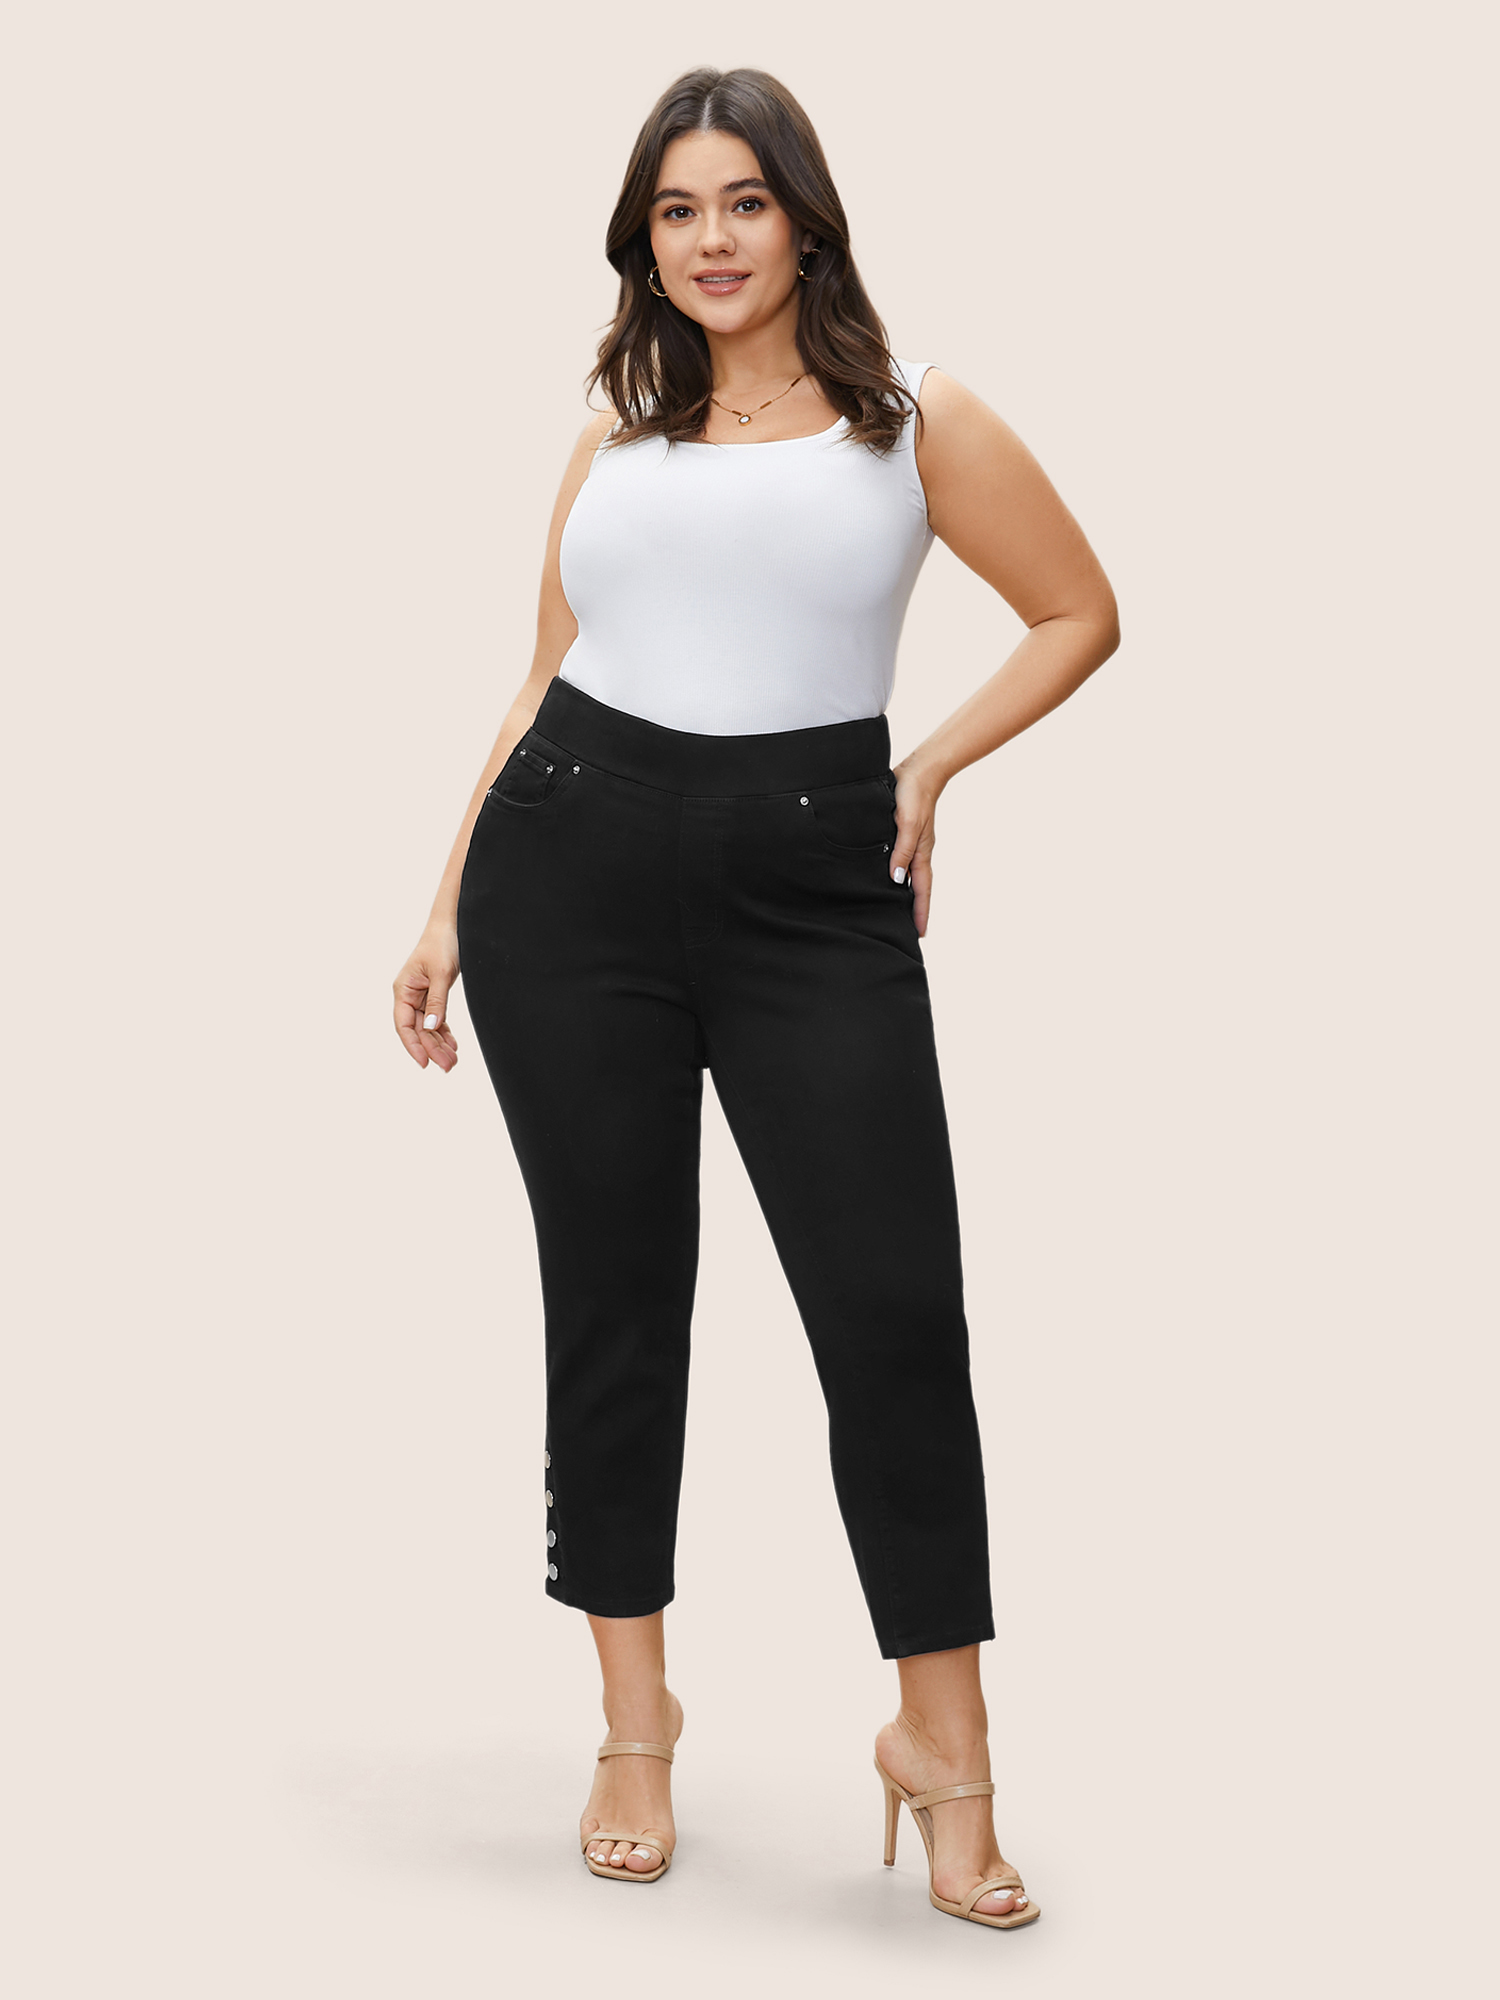 

Plus Size Black Wash Button Detail Elastic Wais Slim Jeans Women Black Elegant Plain Non High stretch Pocket Jeans BloomChic